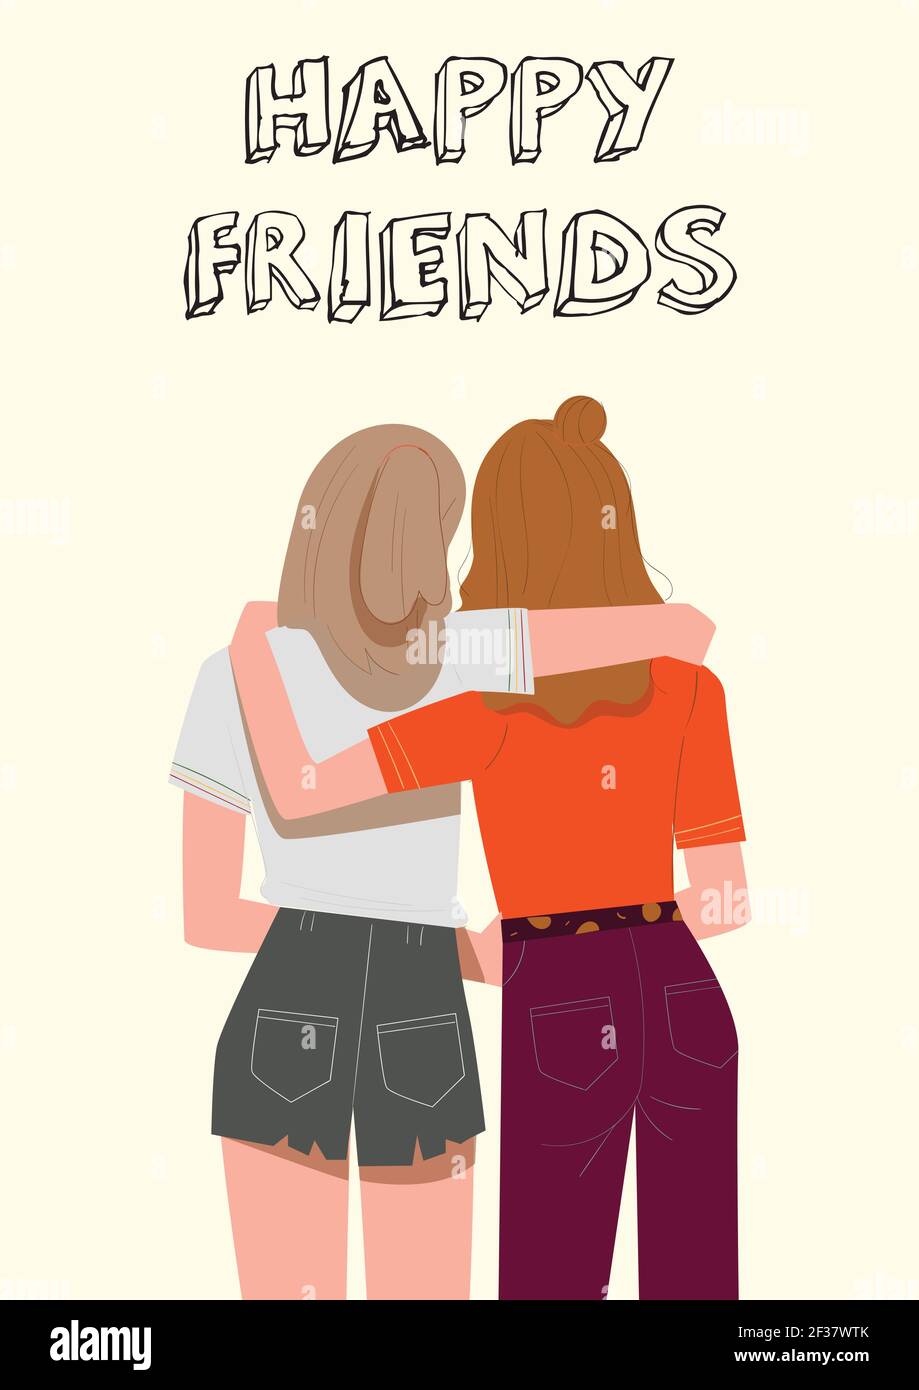 Plakat von zwei glücklichen Freunden umarmt Illustration Vektor, Typografie Kopf, Wanddekor, Liebe Zitate, Grußkarten-Design Stock Vektor